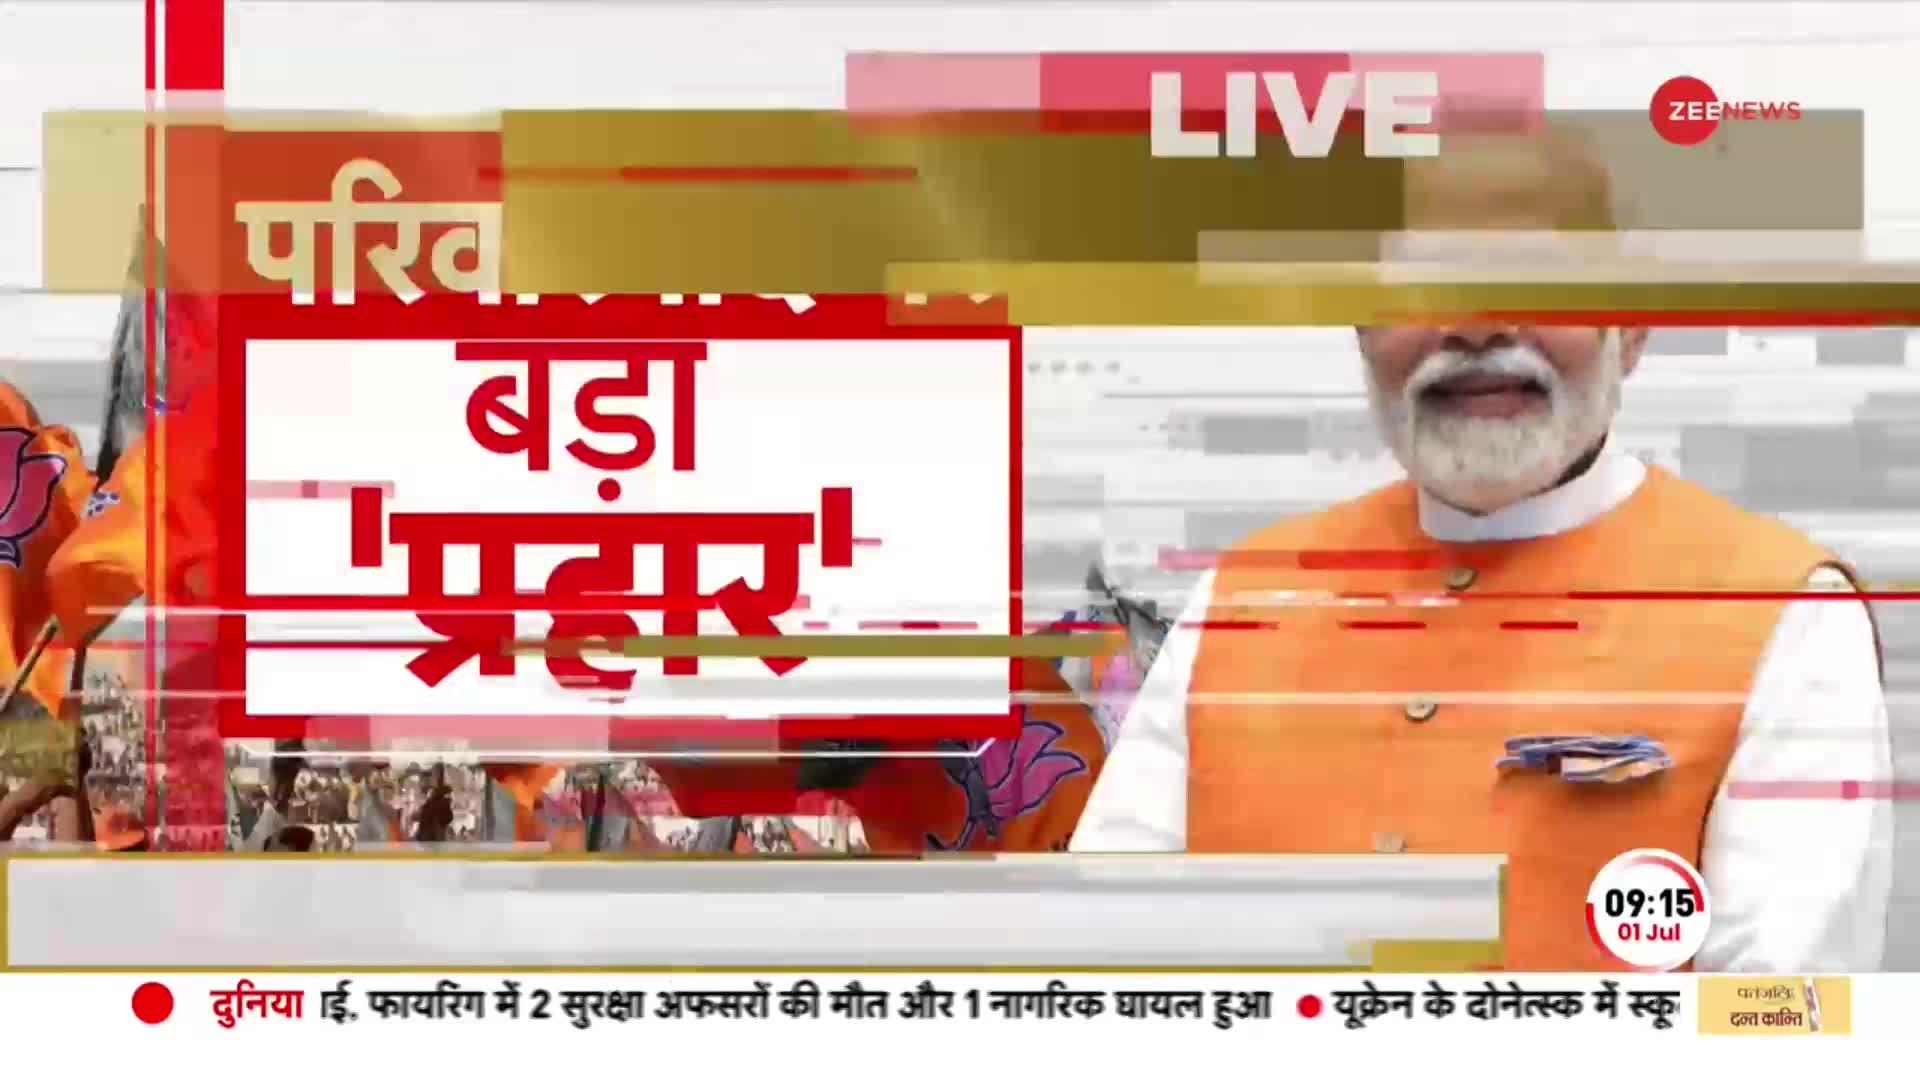 PM Modi MP Visit: मध्यप्रदेश के दौरे पर रहेंगे मोदी, 1 करोड़ आयुष्मान भारत कार्ड का वितरण करेंगे PM